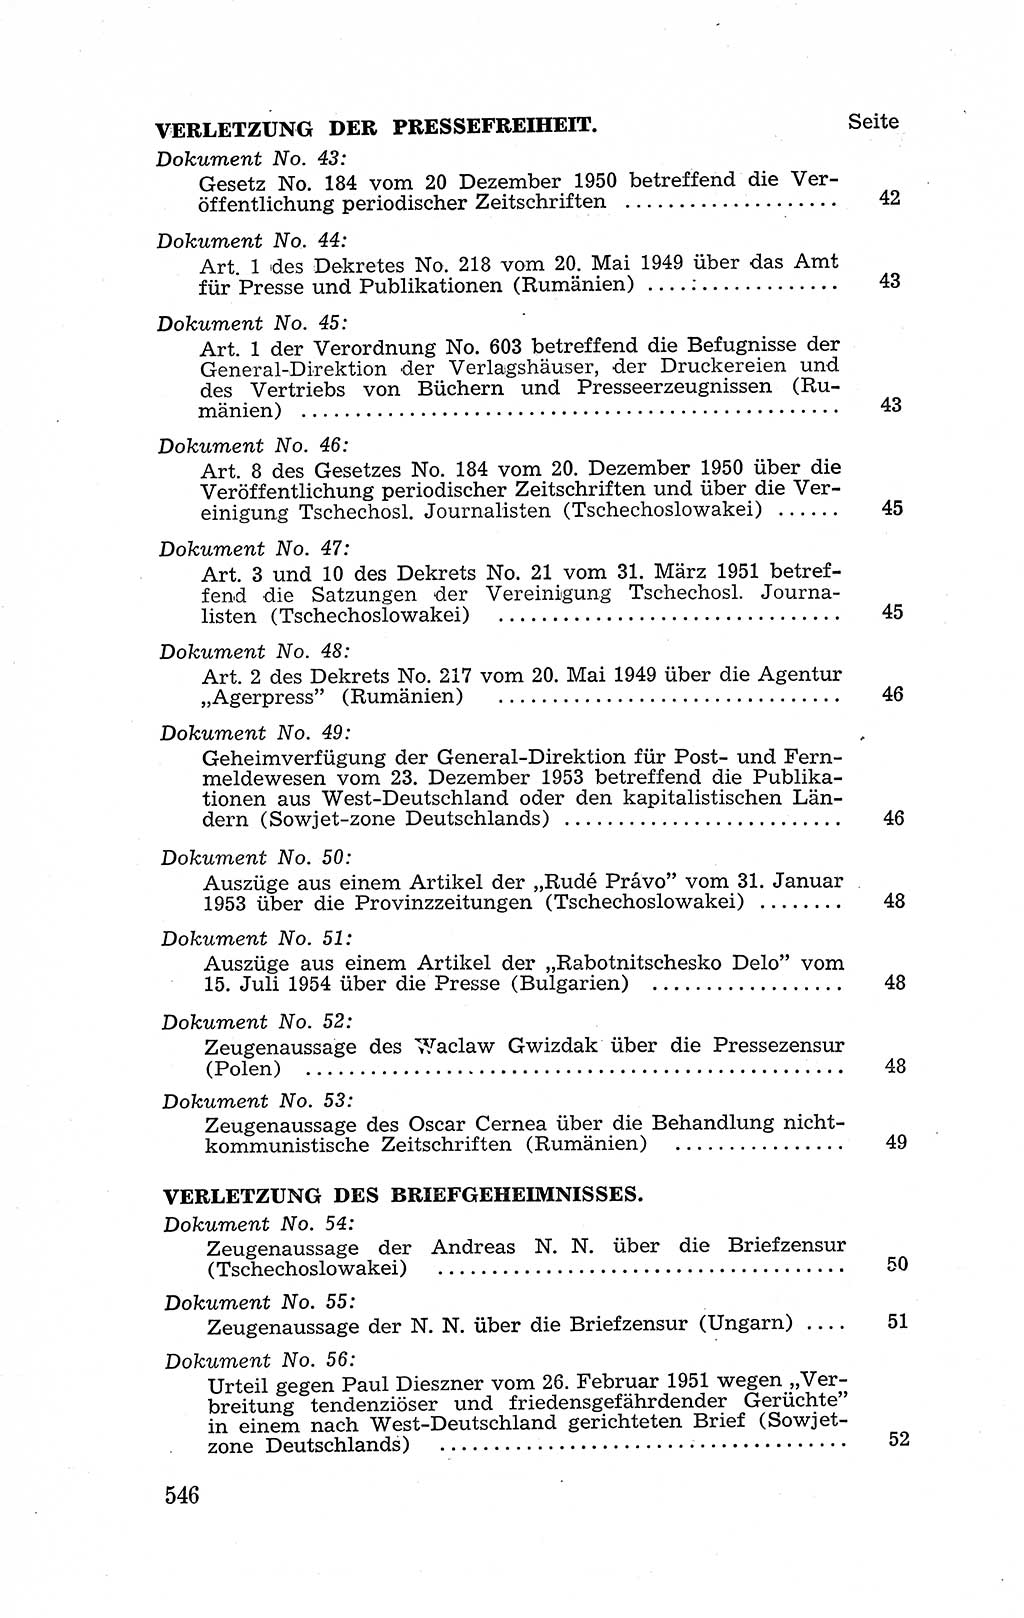 Recht in Fesseln, Dokumente, Internationale Juristen-Kommission [Bundesrepublik Deutschland (BRD)] 1955, Seite 546 (R. Dok. IJK BRD 1955, S. 546)